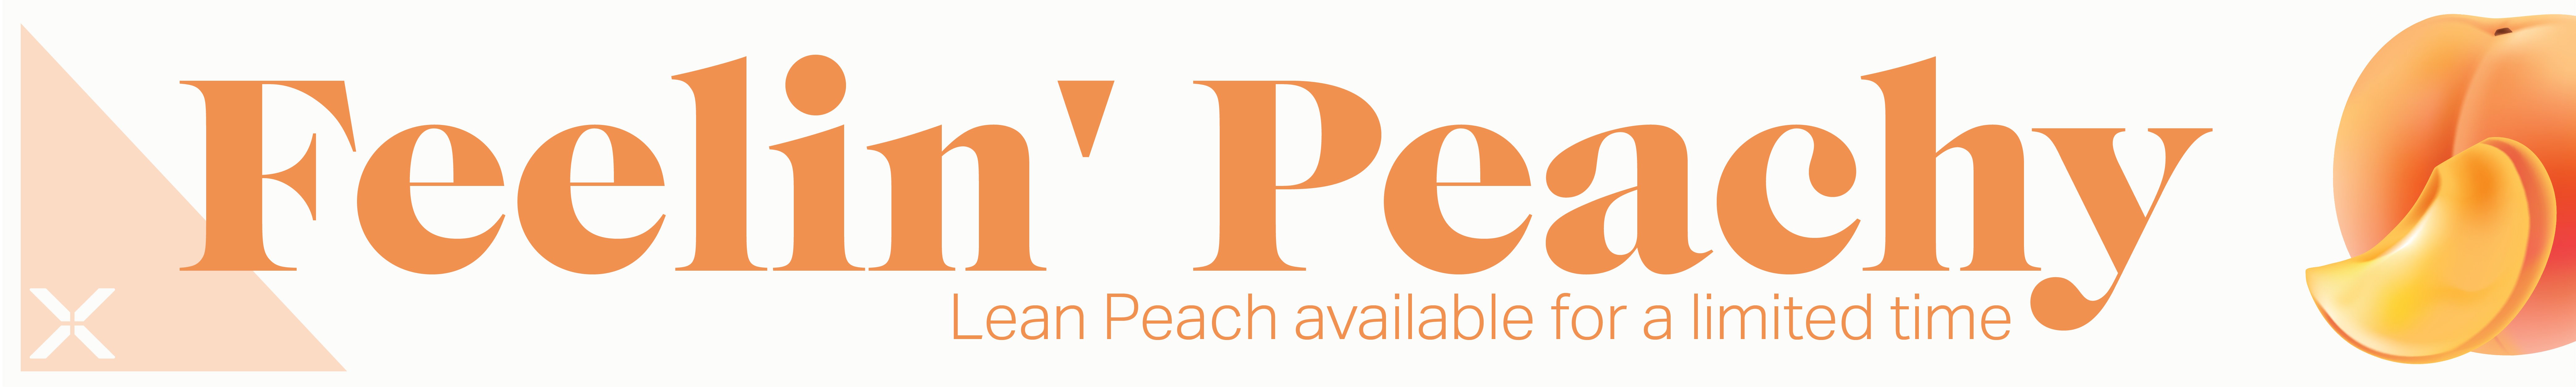 Introducing New Lean Peach